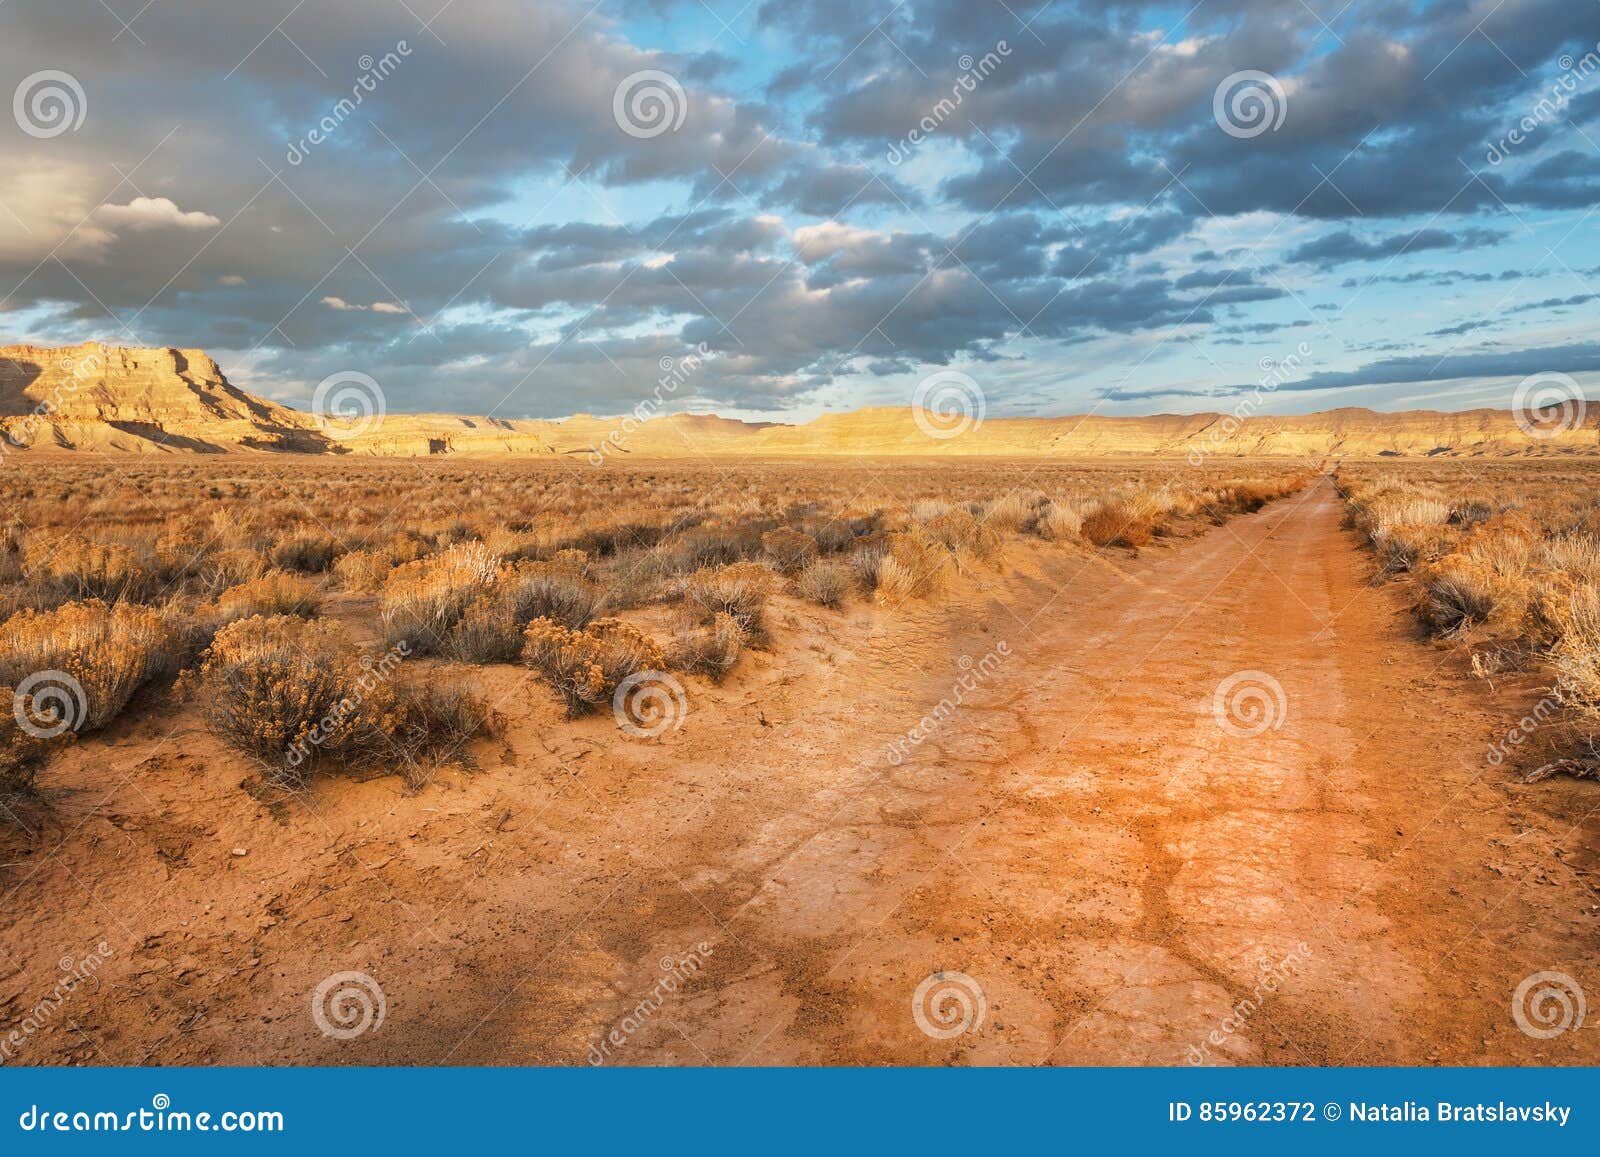 unpaved desert road